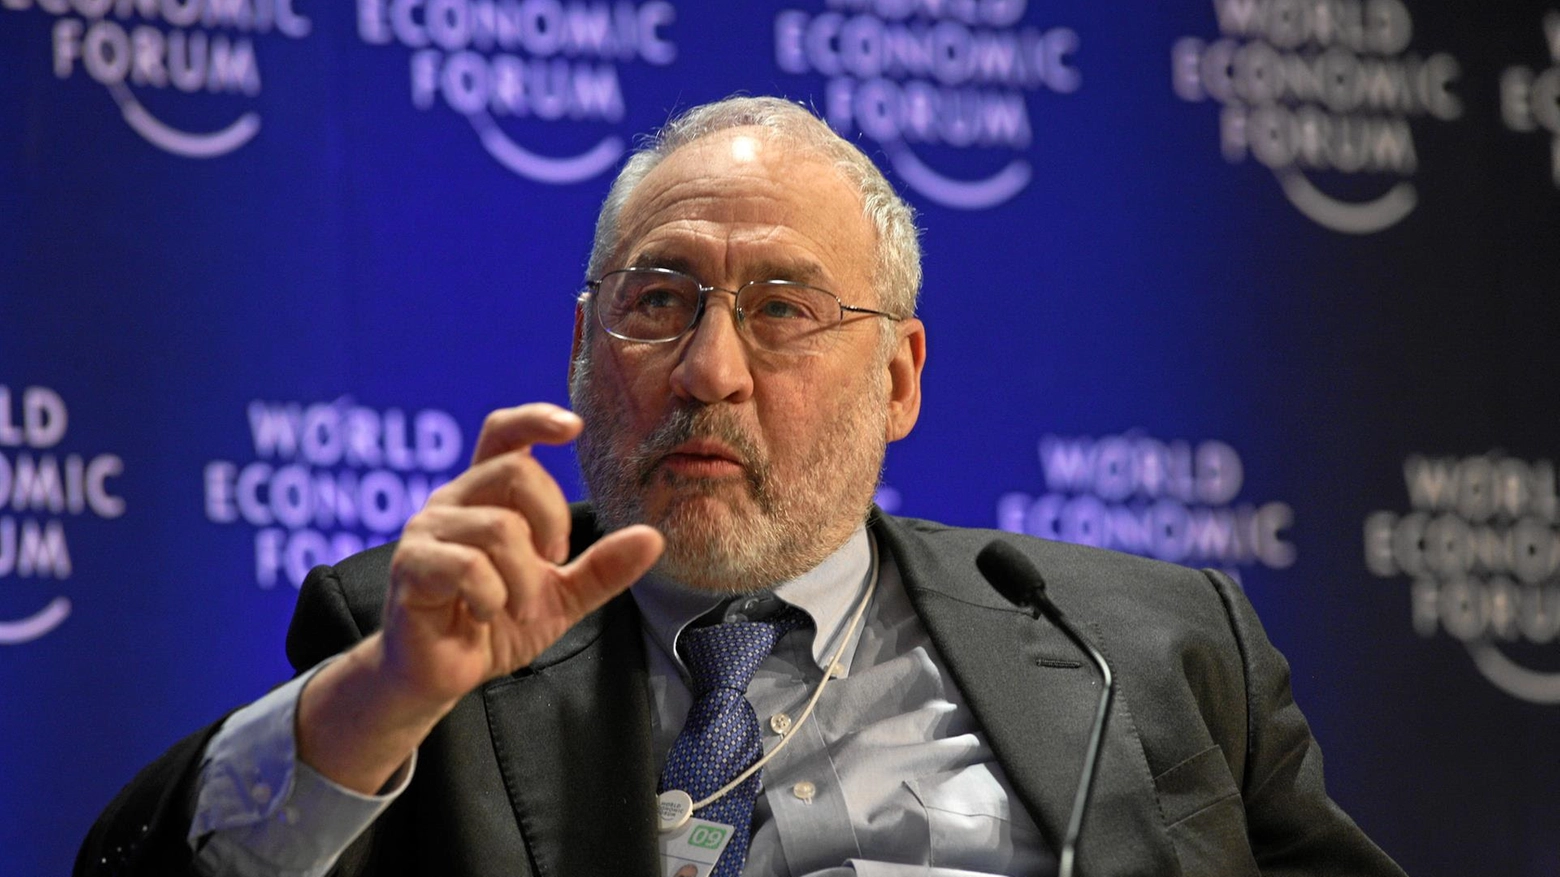 All'economista Joseph E. Stiglitz il PhD honoris causa in Economics. Appuntamento giovedì 11